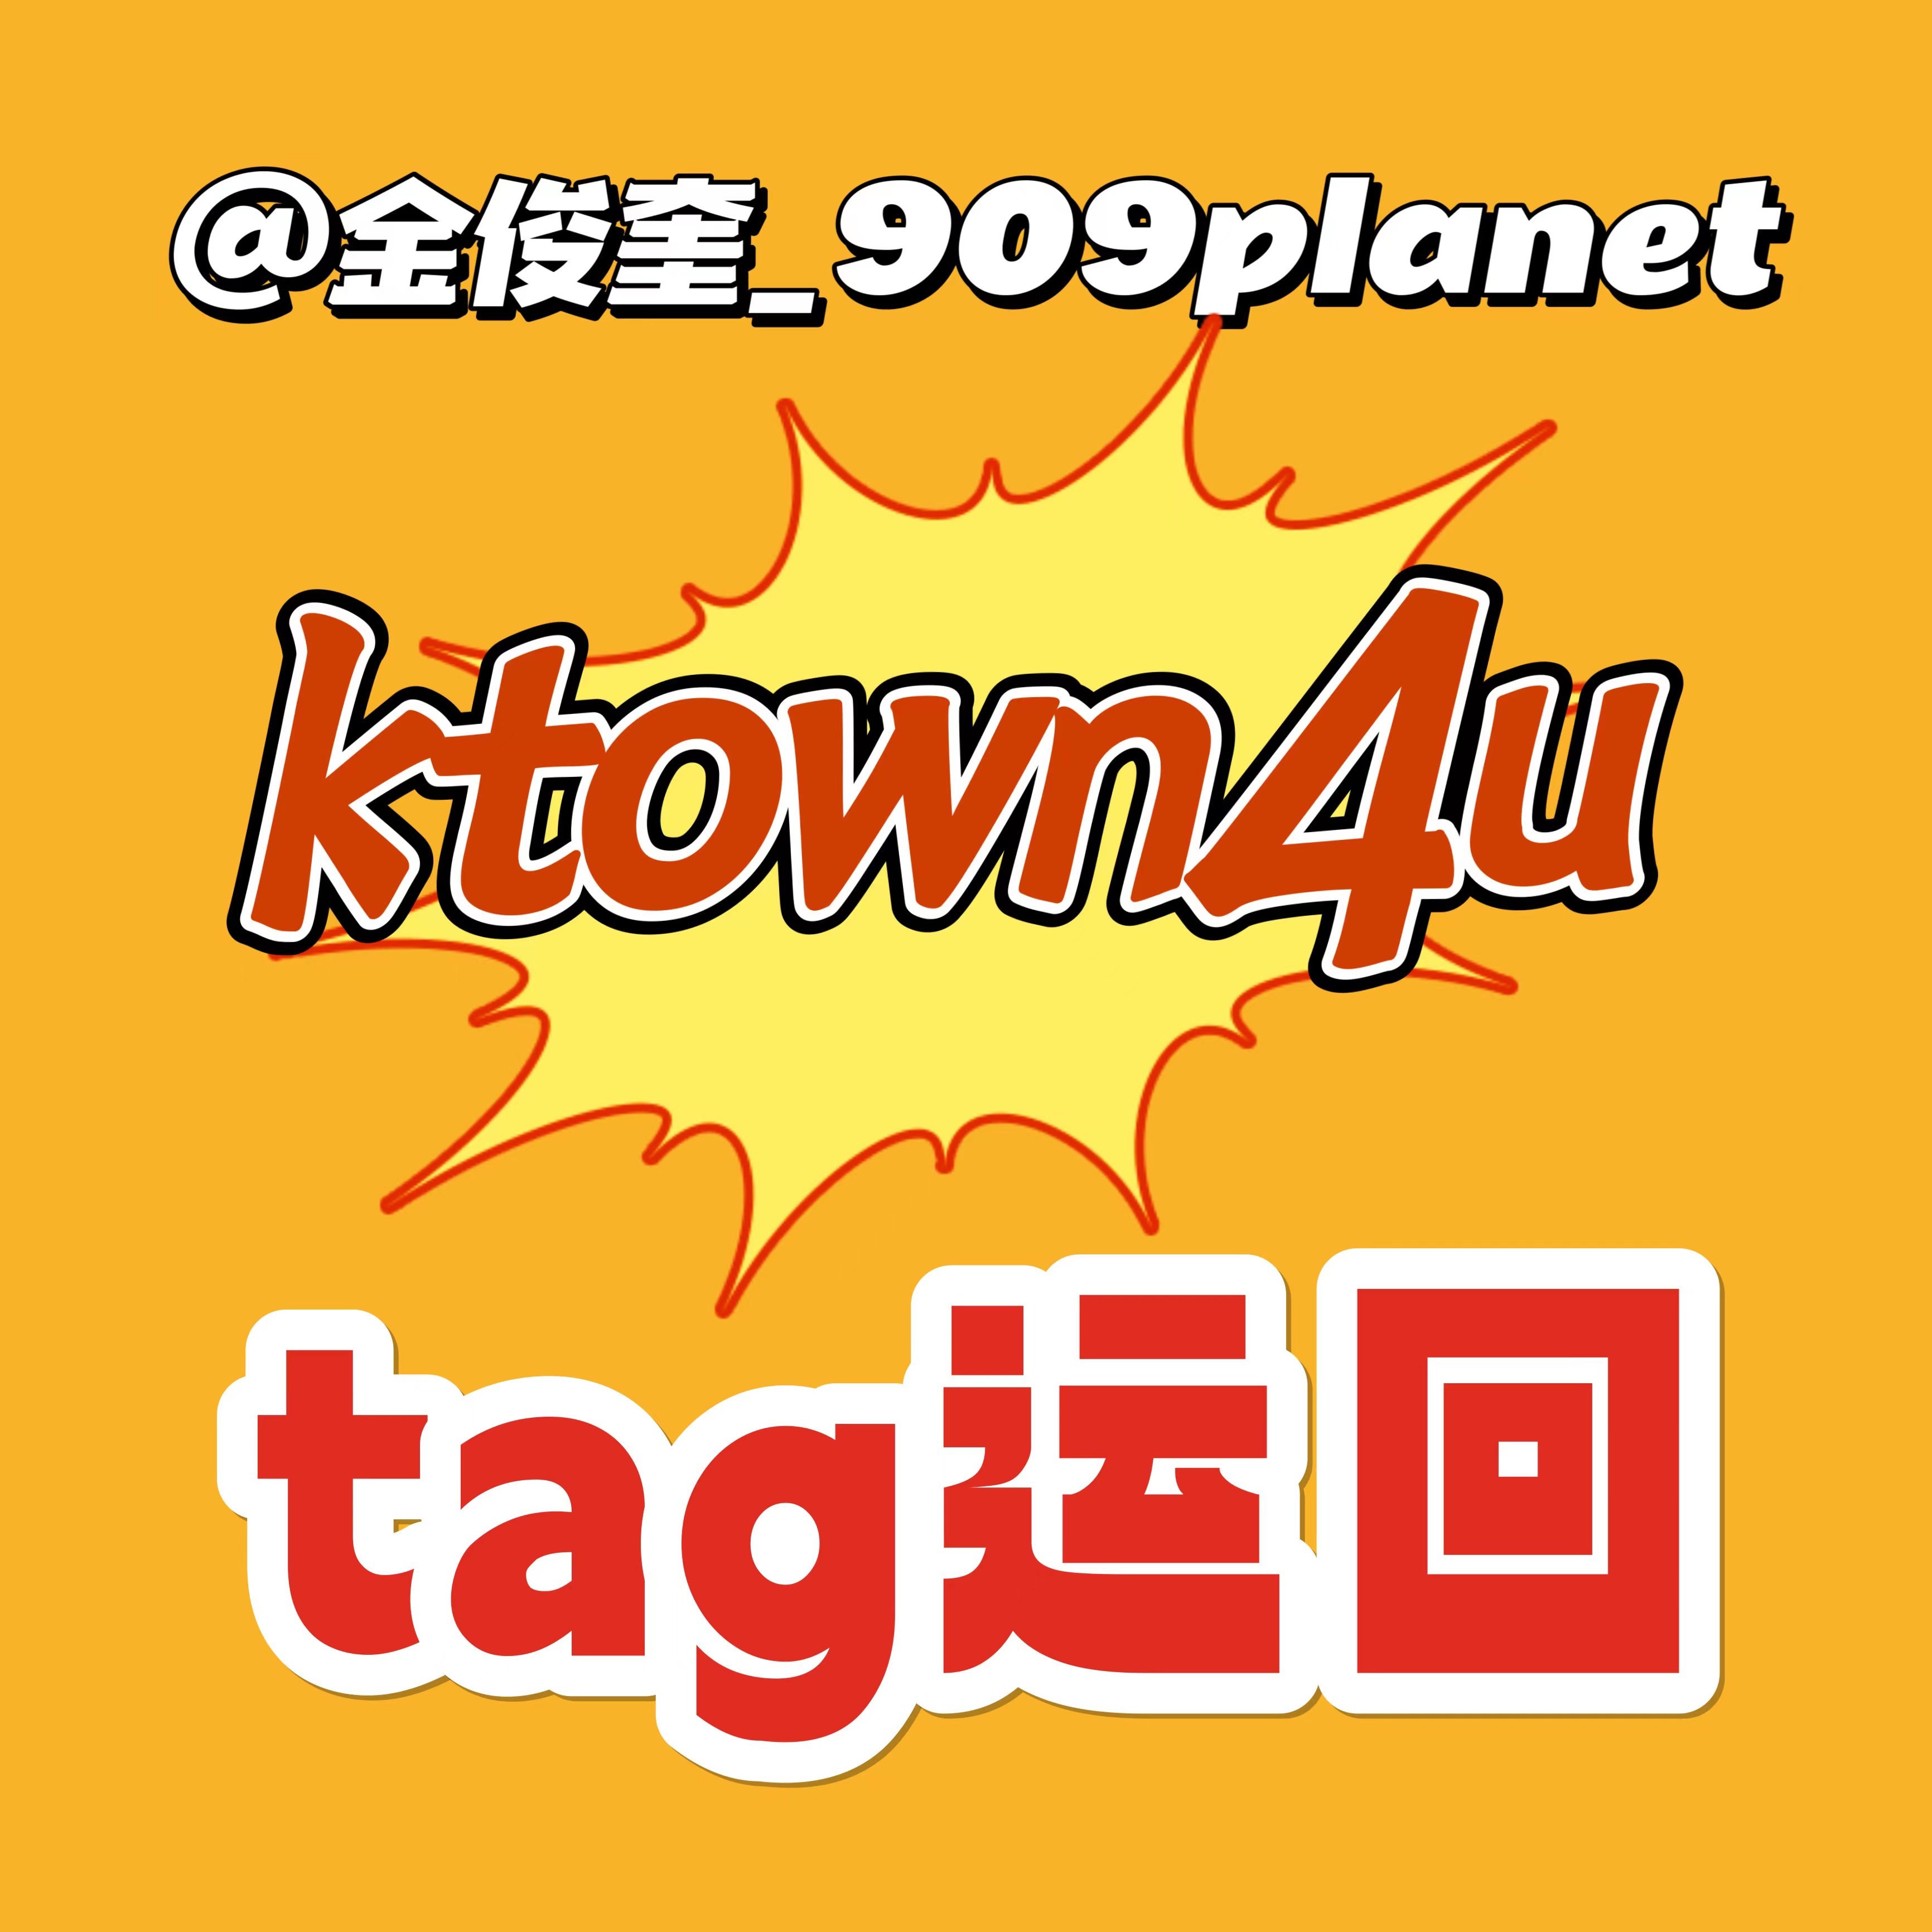 [全款 裸专] [Ktown4u Special Gift] [4CD 套装] TREASURE - 2ND FULL ALBUM [REBOOT] YG TAG ALBUM_金俊奎909Planet